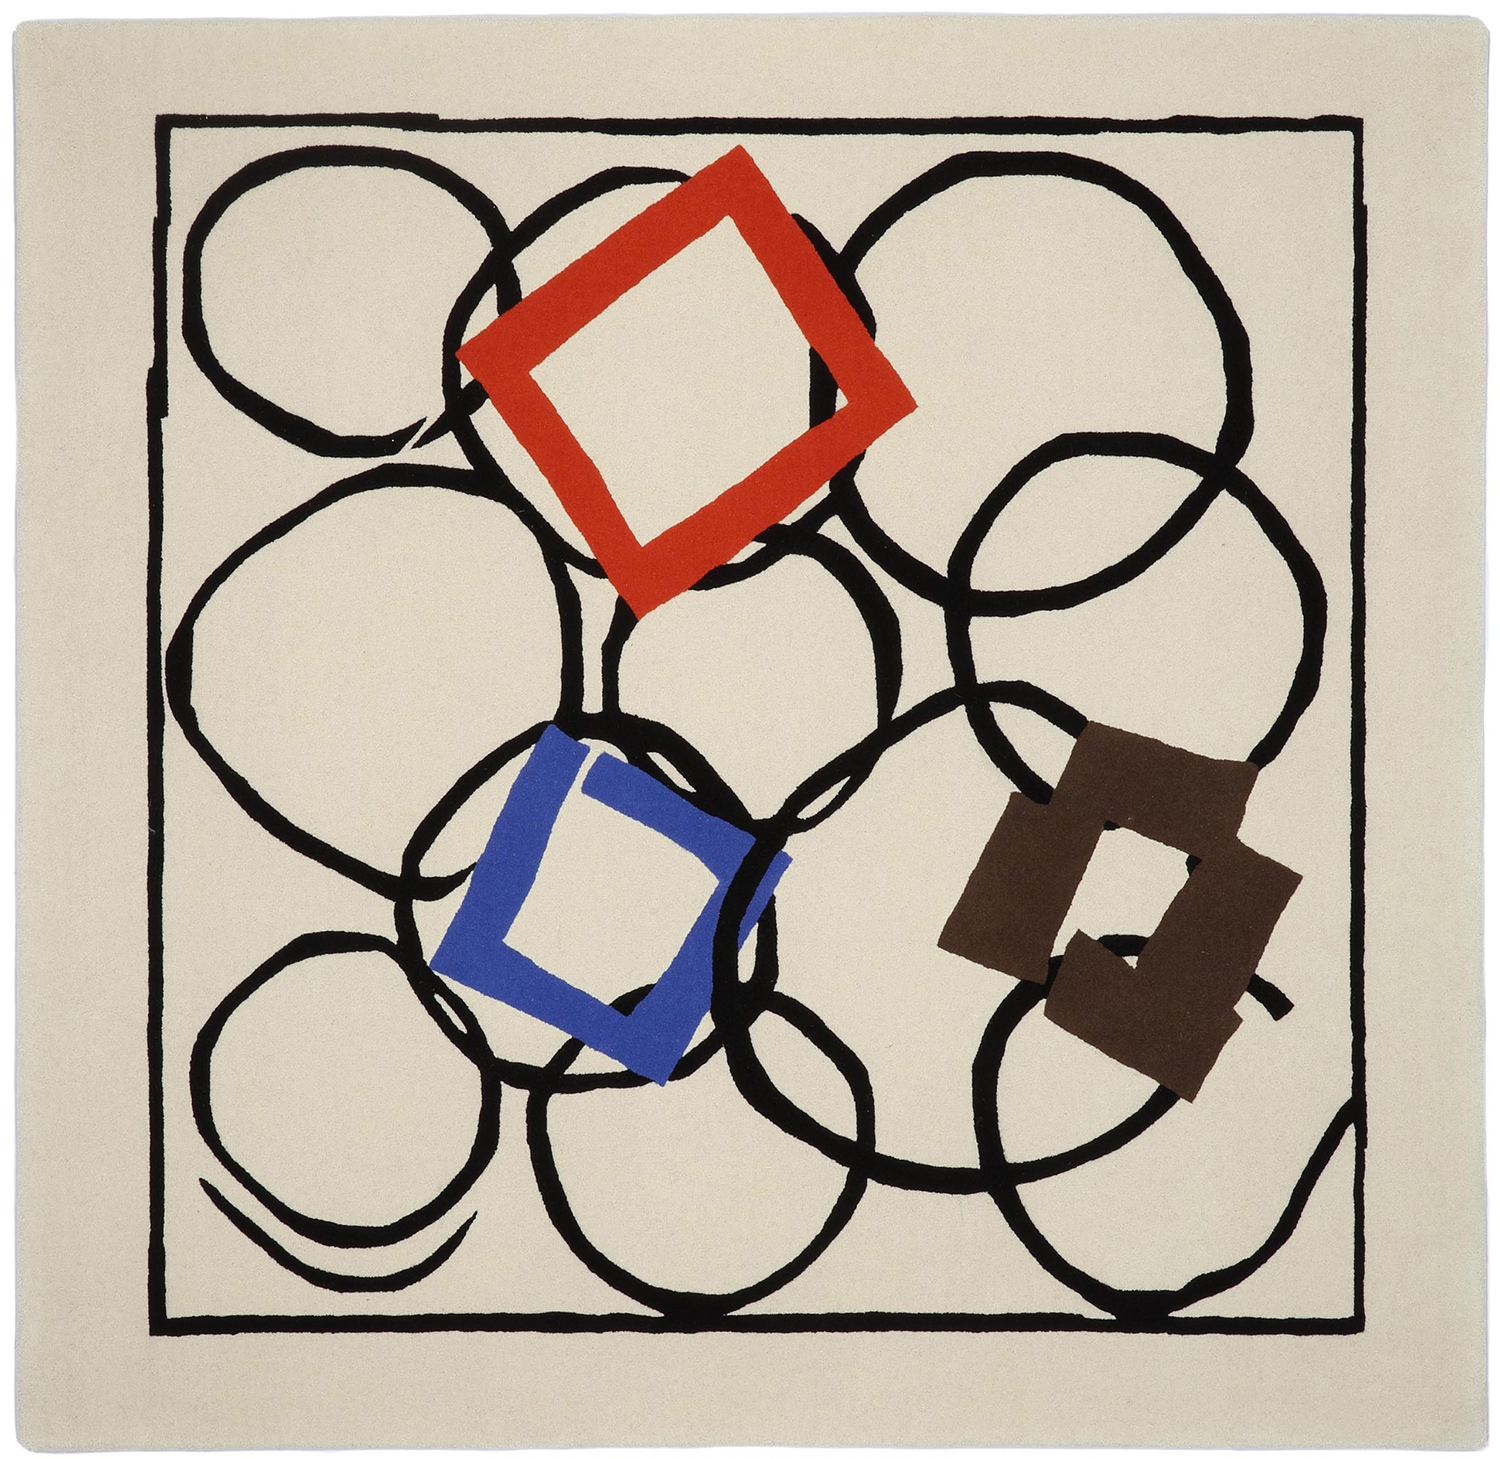 Squares in Orbit 地毯的图片
